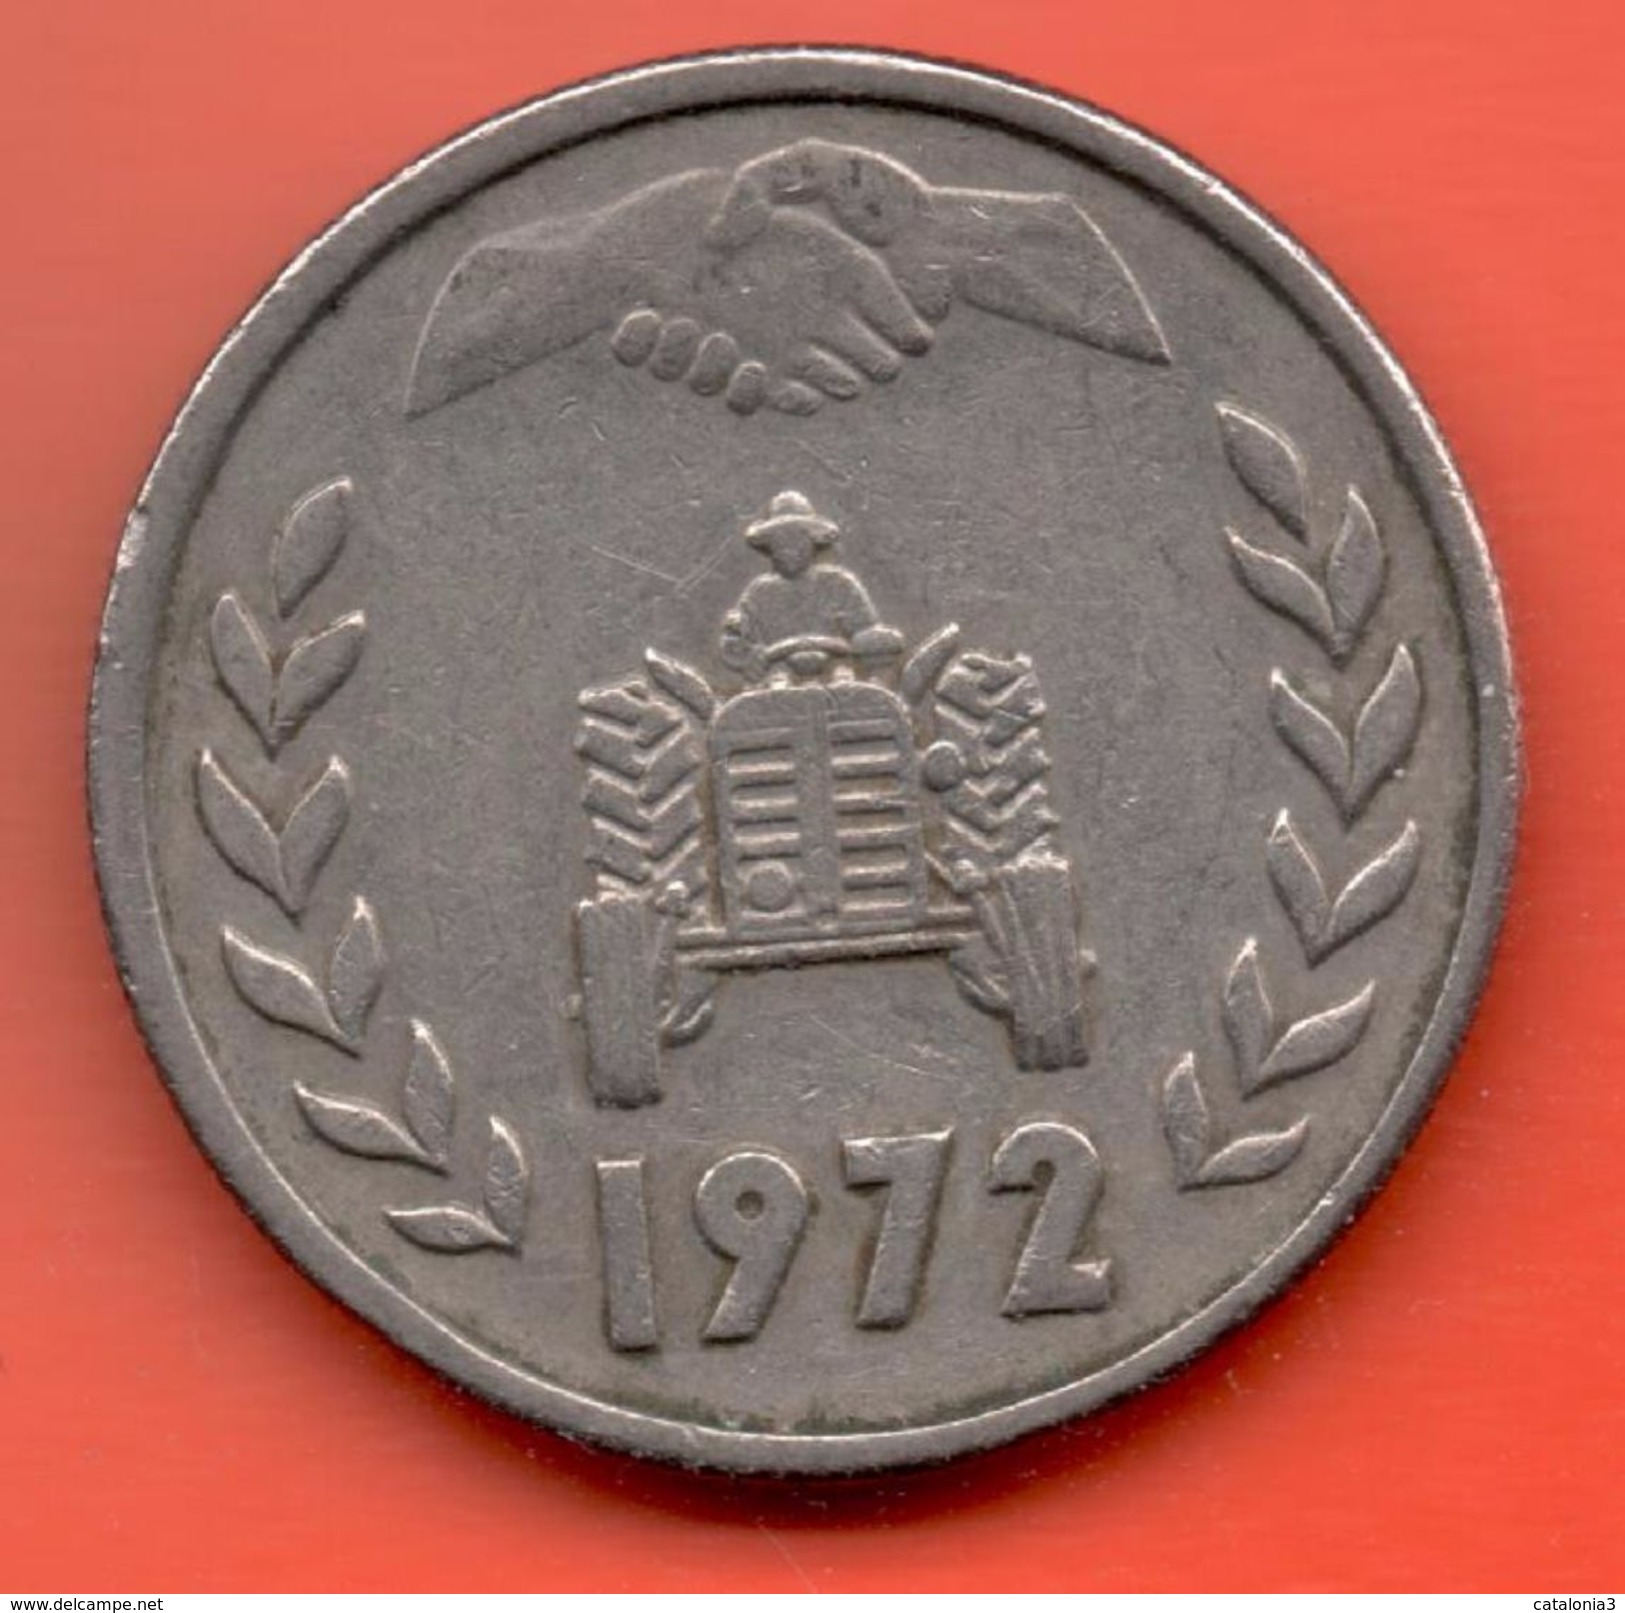 ARGELIA - ALGERIA = 1 DINAR 1972 - Algerije